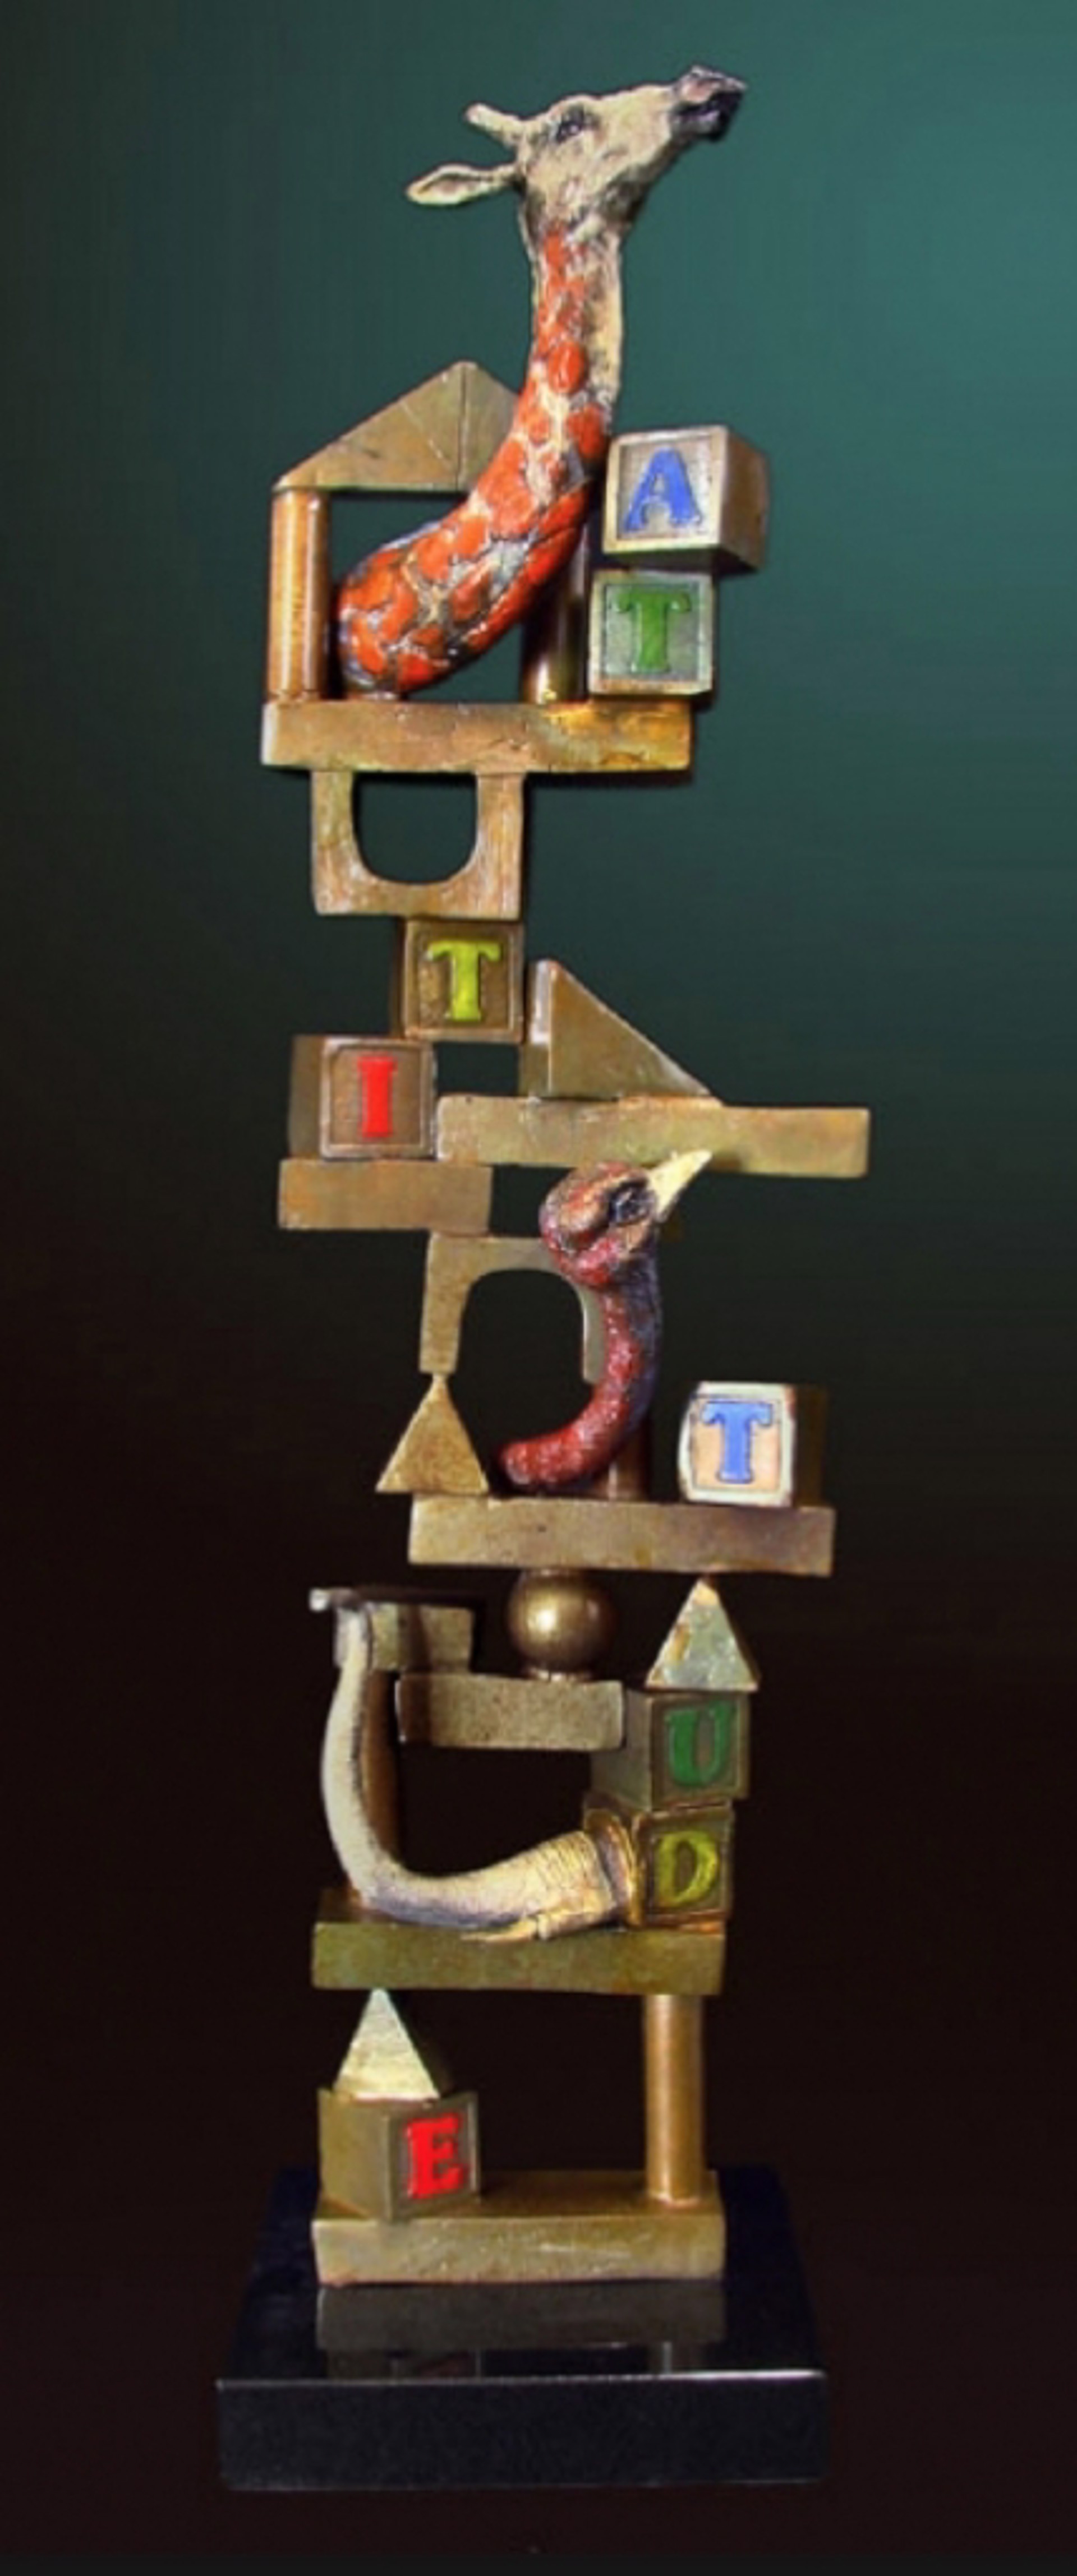 Building Blocks Scultpture by Glen Tarnowski